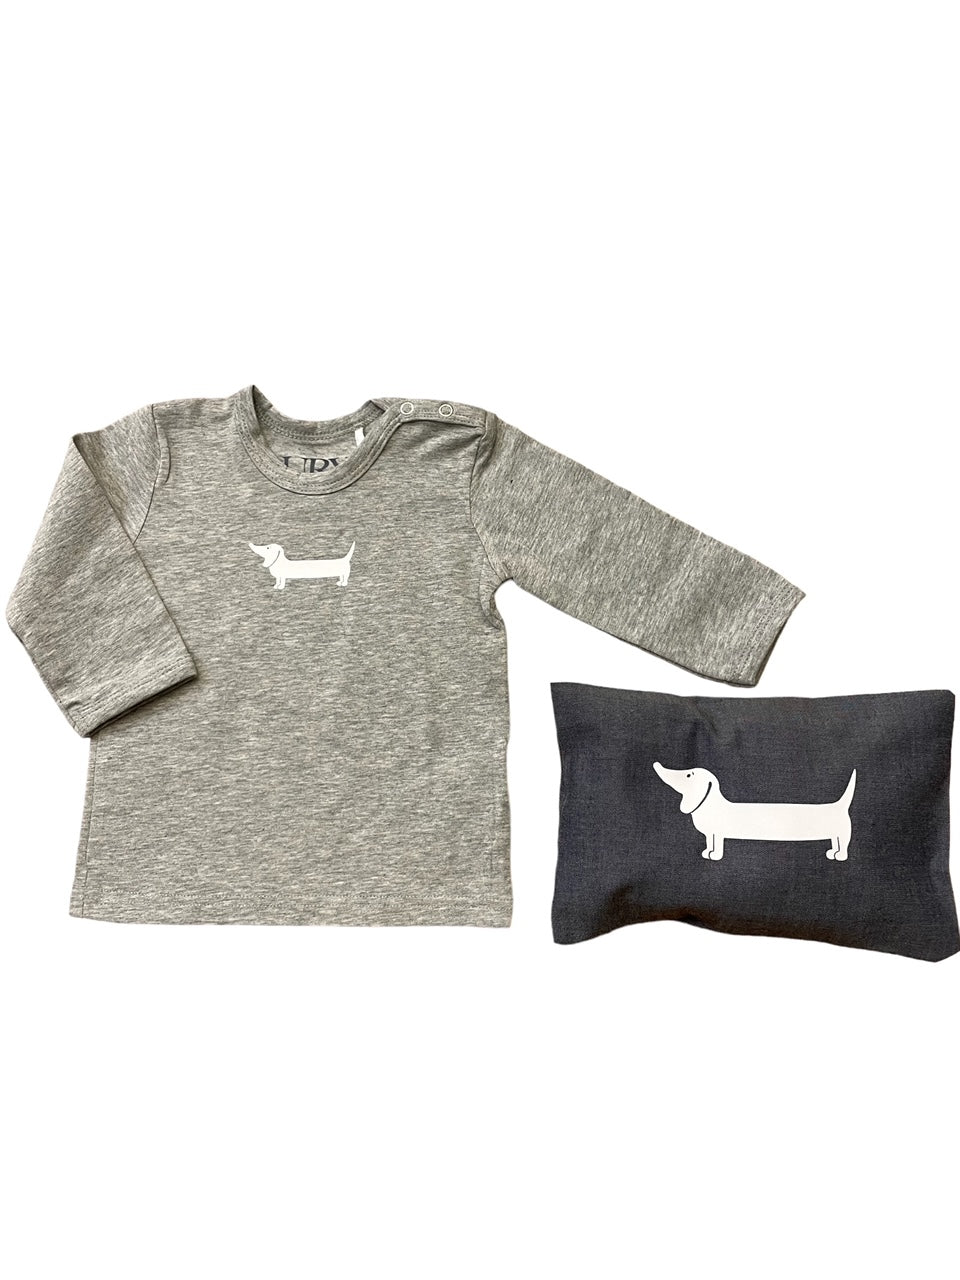 Auryn - Baby Shirt grau Biobaumwolle mit Dackel weiss